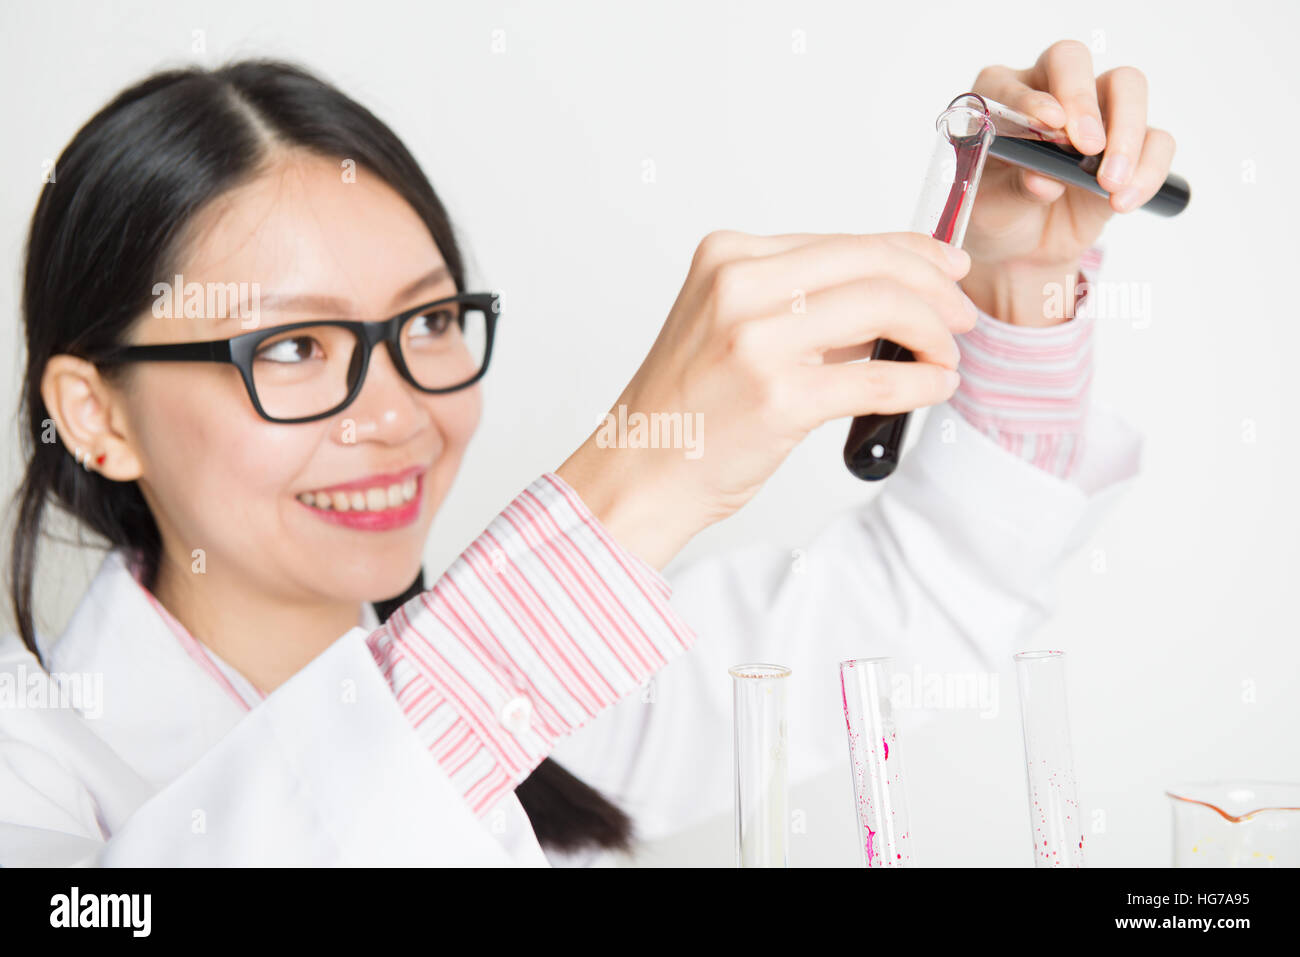 Attraktive asiatische Forscherin Durchführung wissenschaftlicher Forschung in einem Labor. Stockfoto